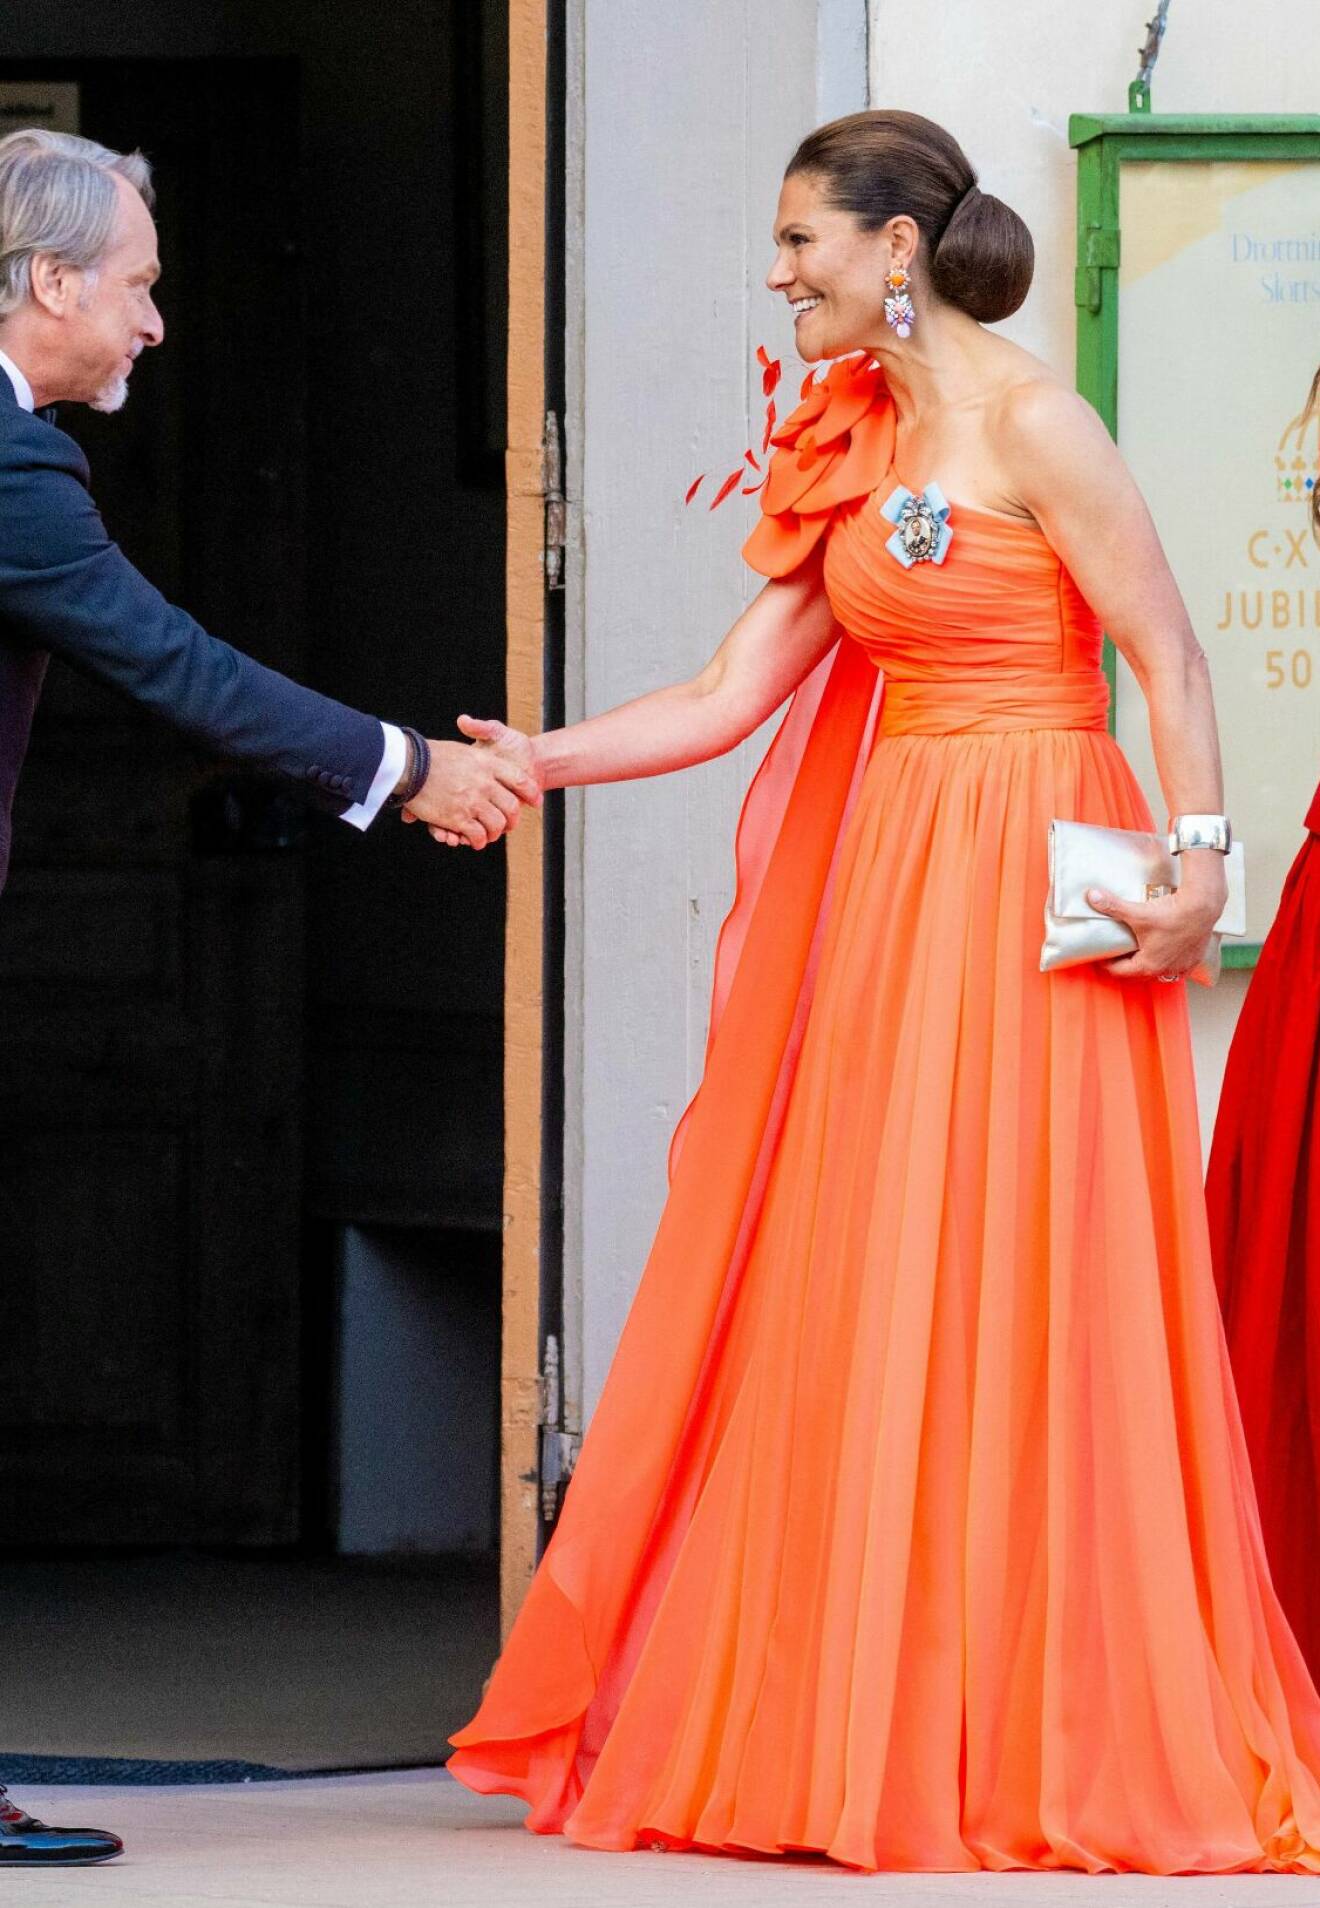 Kronprinsessan Victoria i en orange aftonklänning i design av Christer Lindarw